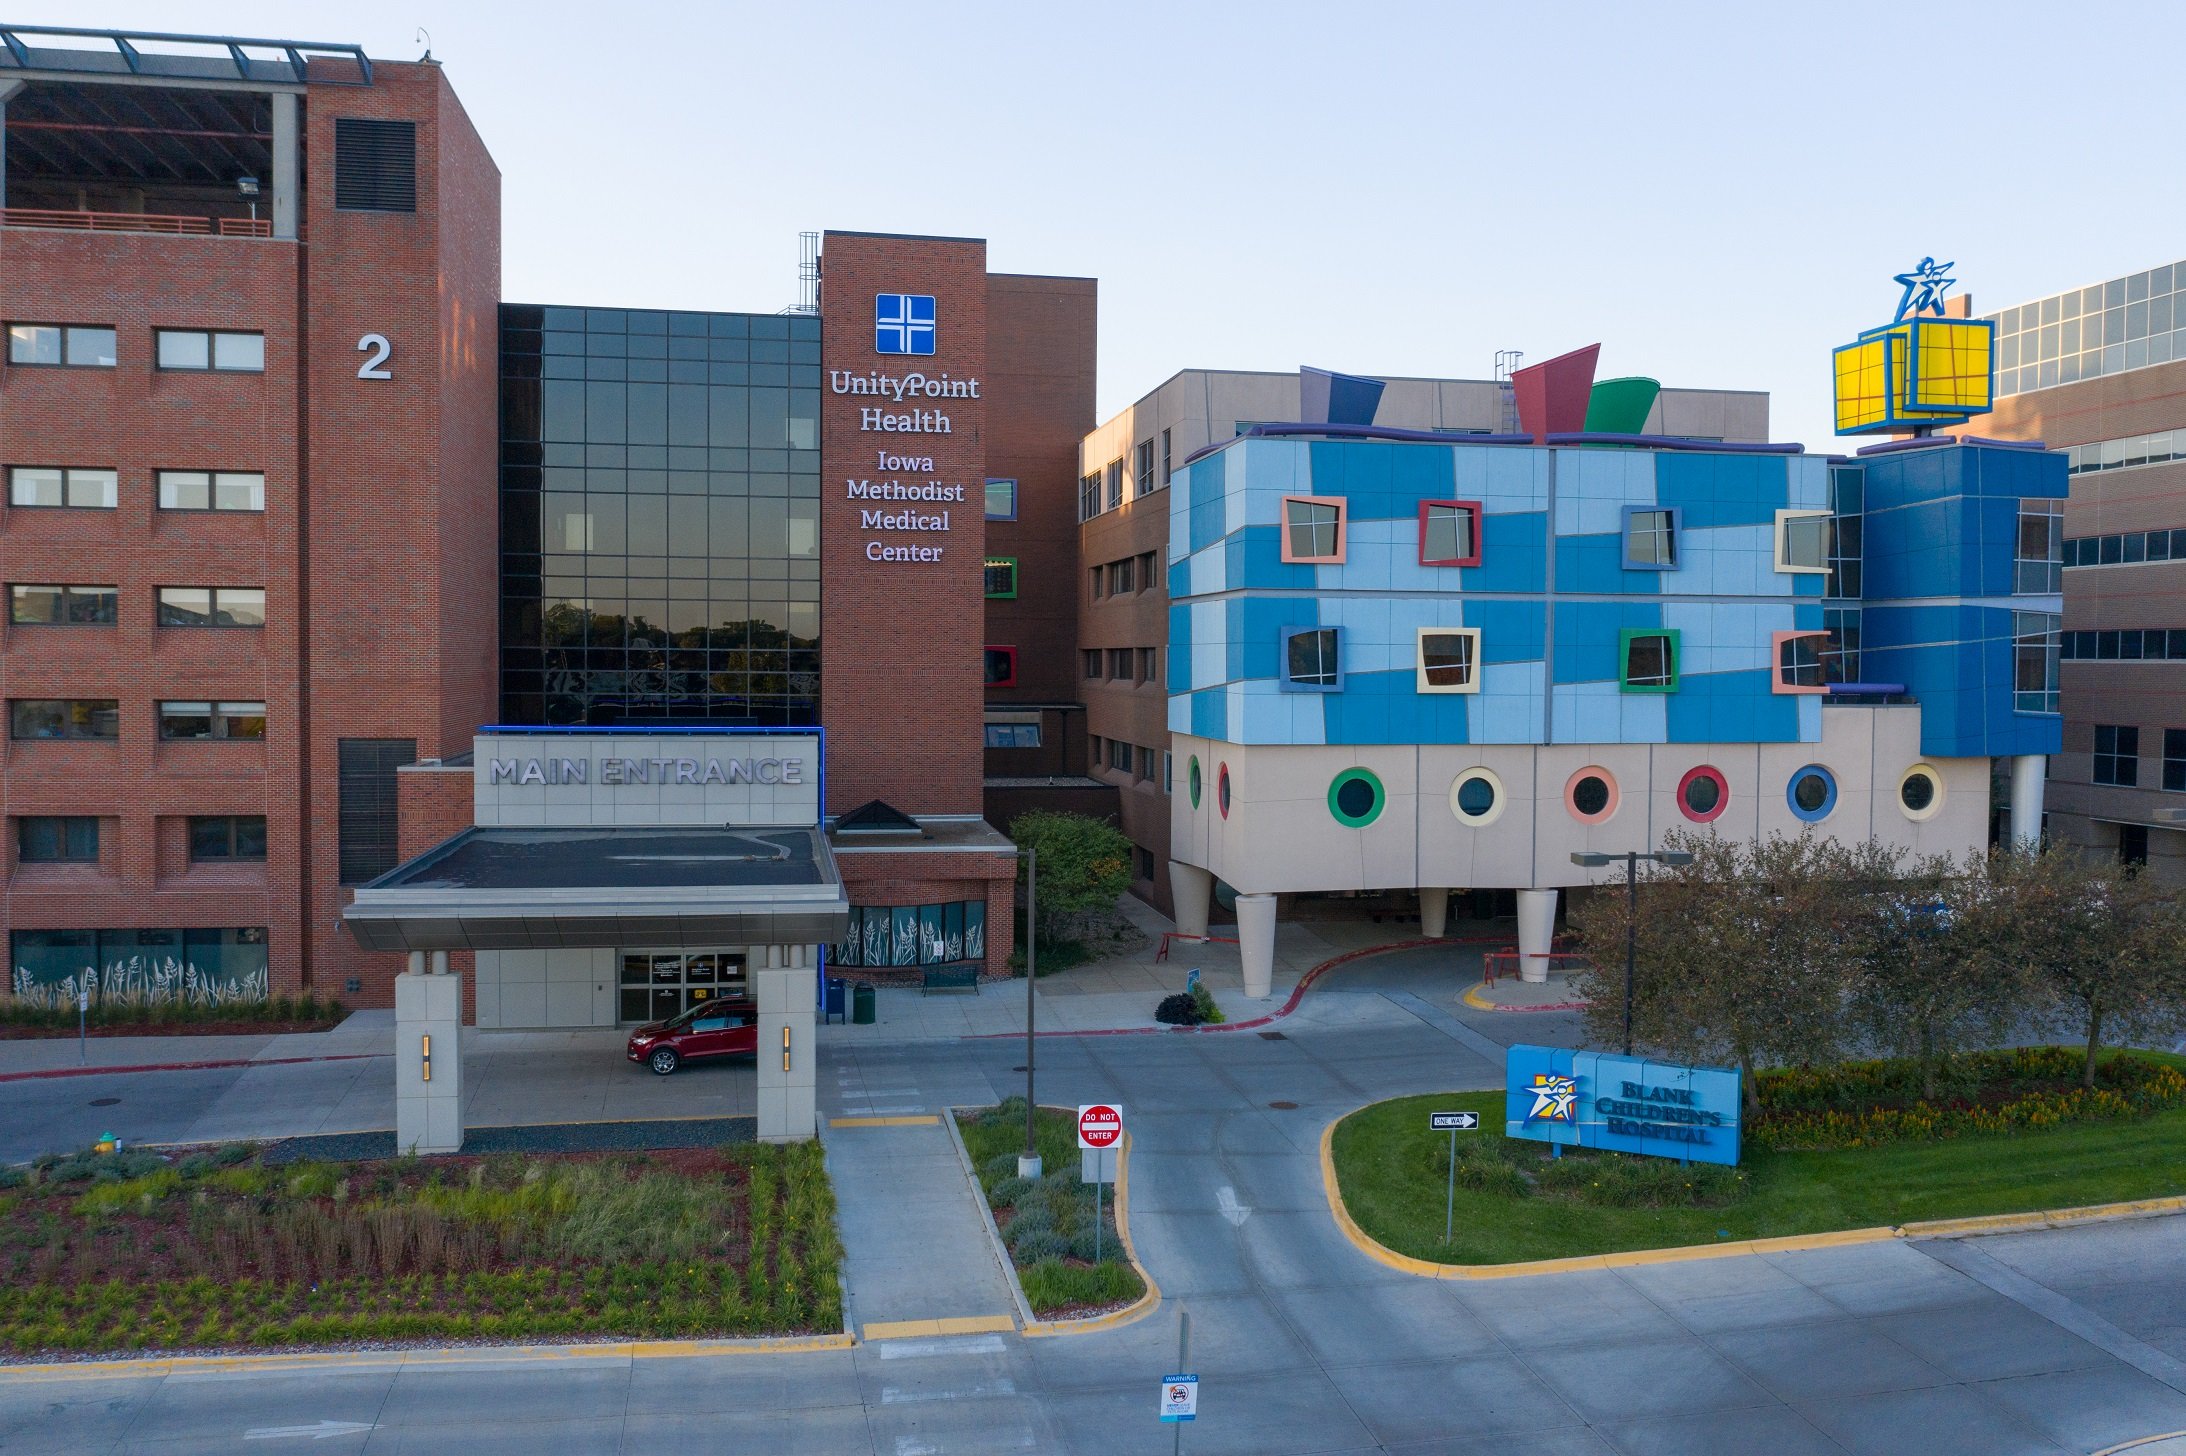 UnityPoint Healths Iowa Methodist Medical Center